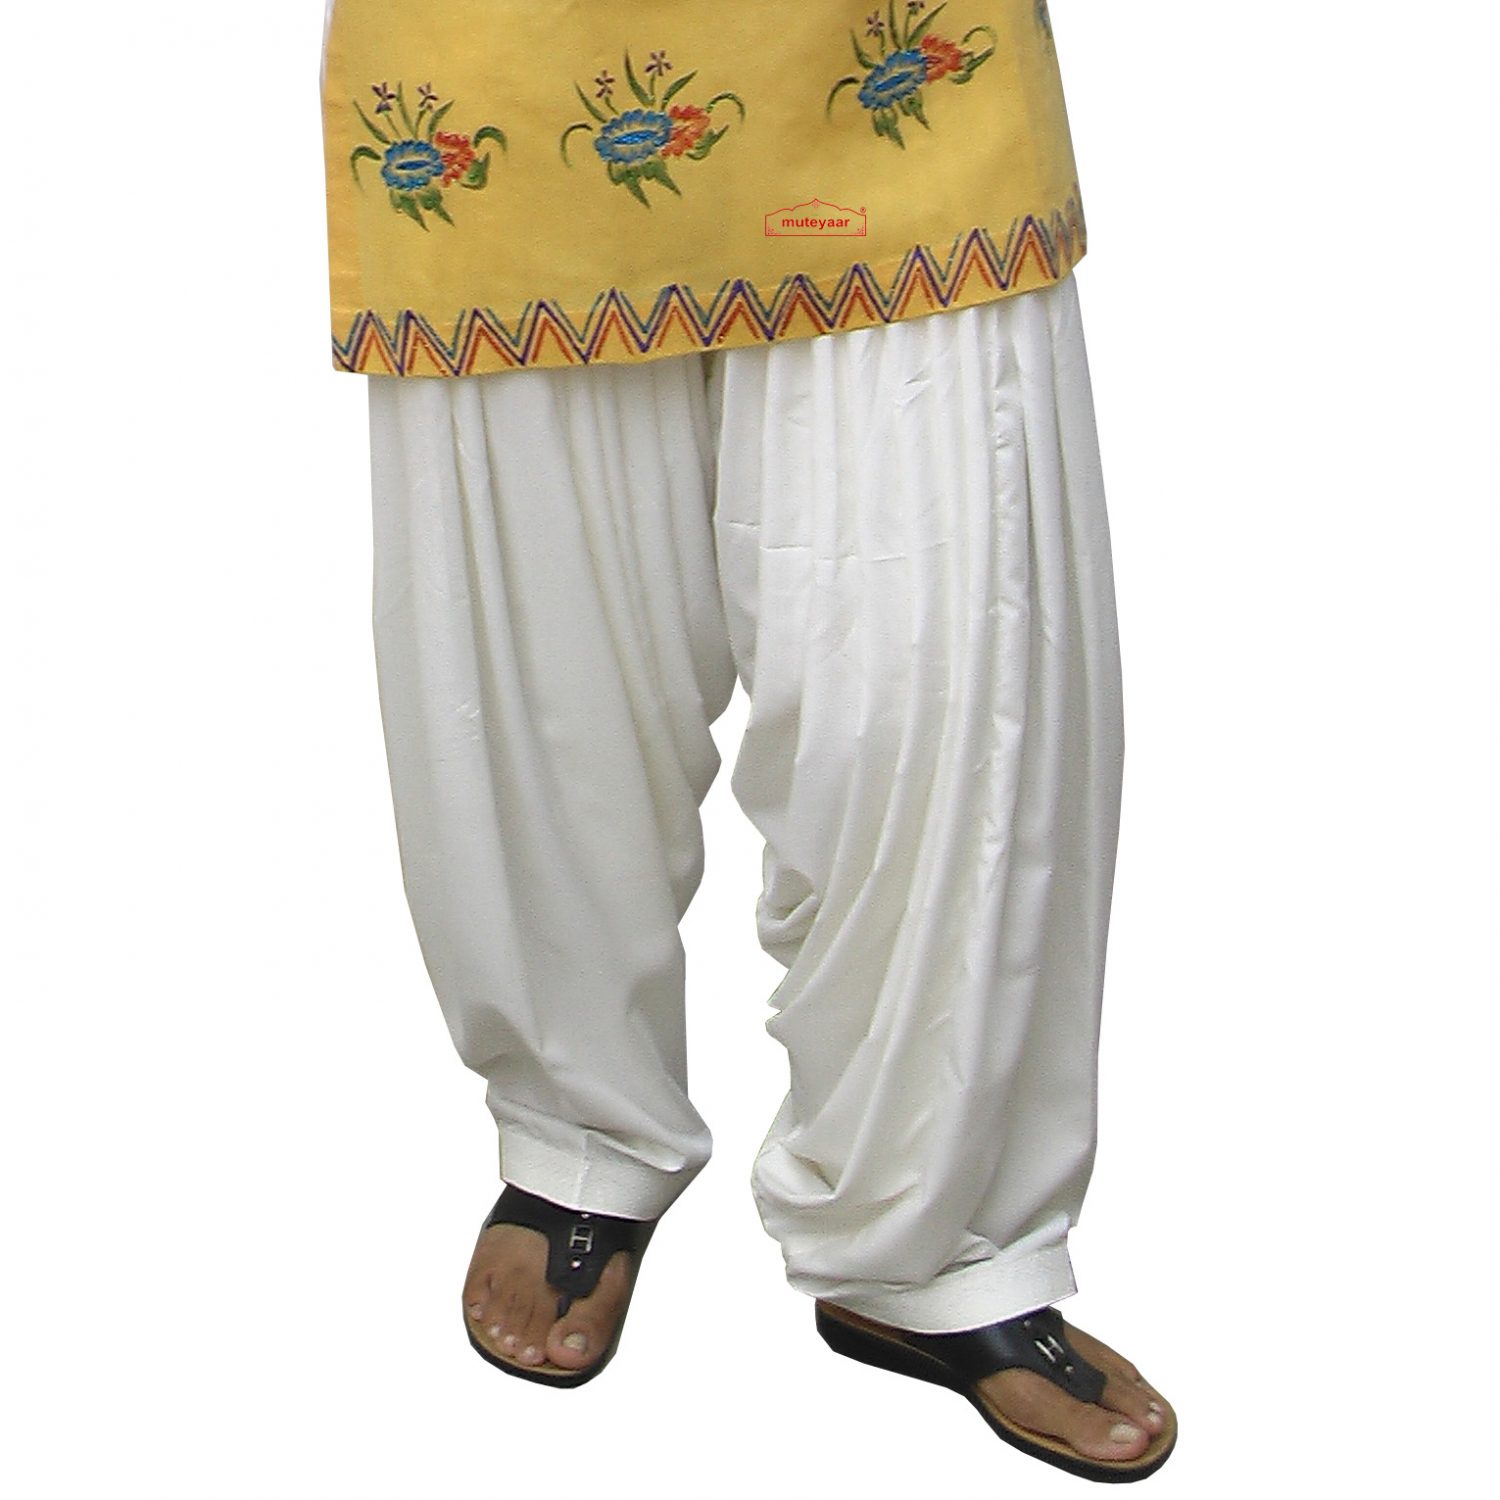 Buy Girtachi Rayon Regular Fit Dhoti Patiala Salwar Harem Bottom Pants for  Girls Women at Amazon.in